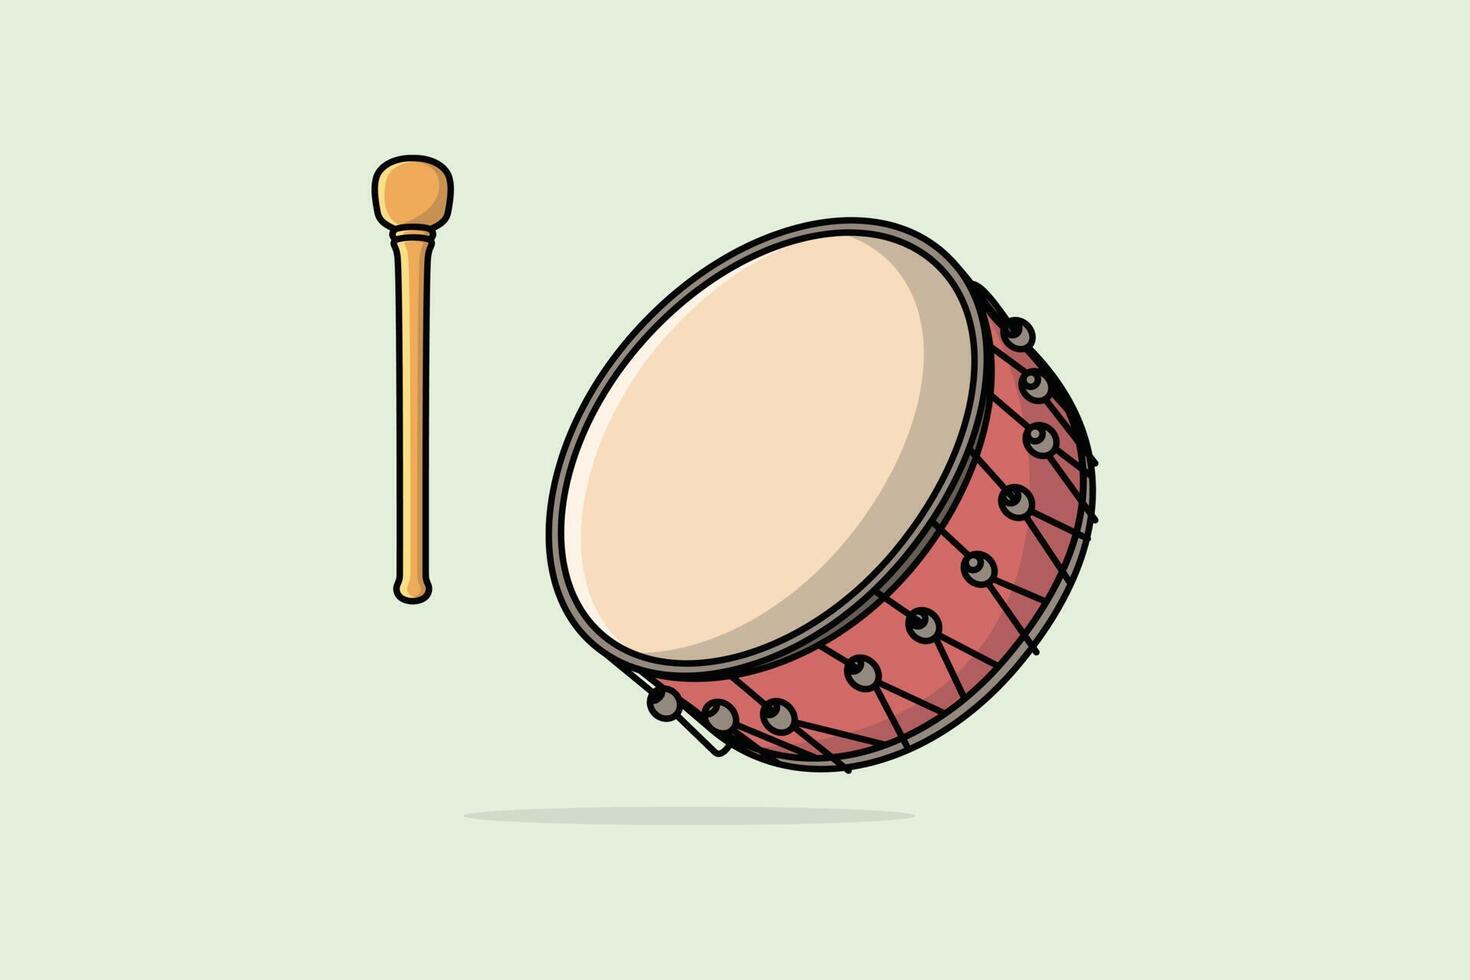 caisse claire de tambour avec illustration vectorielle de bâtons. concept d'icône d'objet d'instrument de musique. symbole musical de tambour ou caisse claire avec dessin vectoriel de bâtons sur fond rose avec ombre.